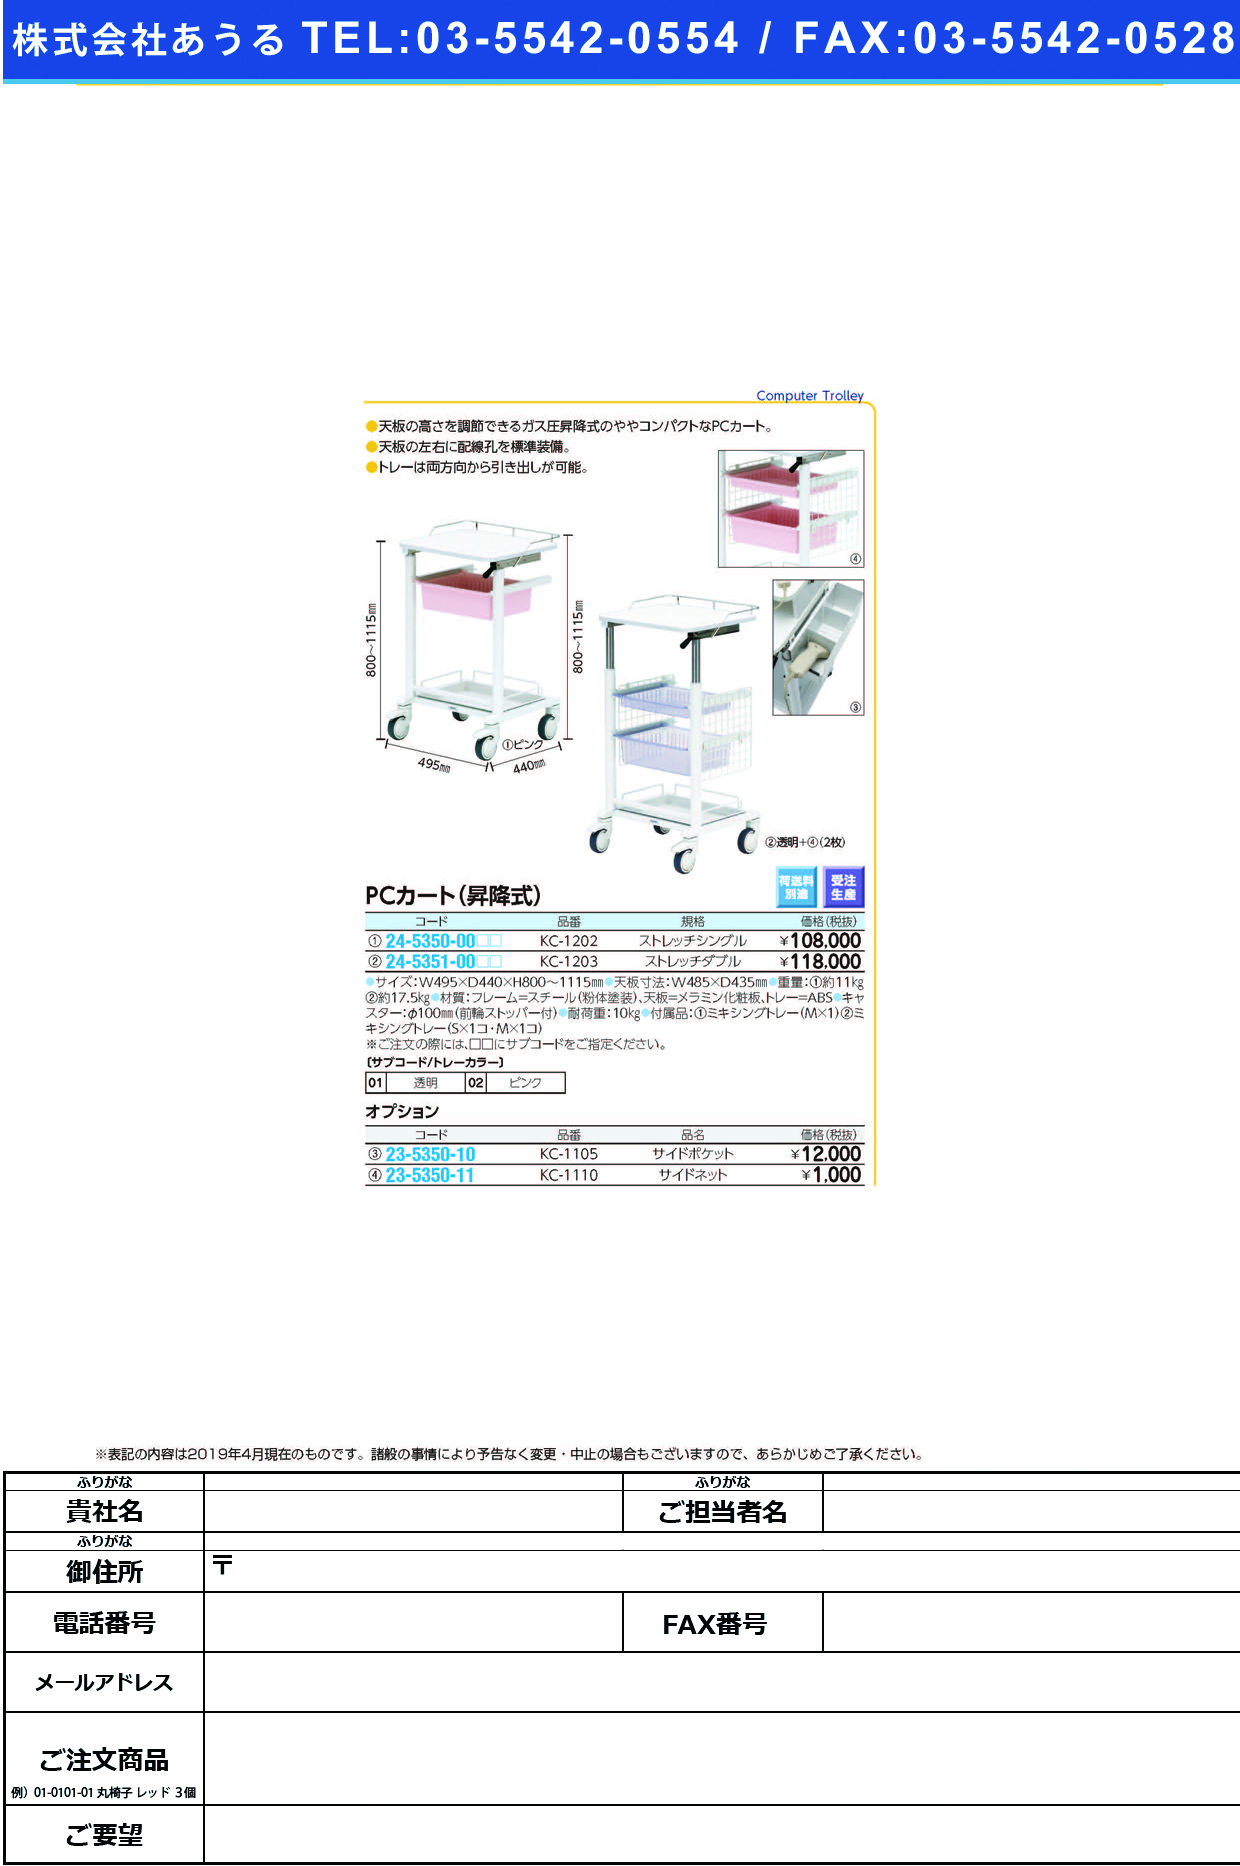 (24-5351-00)ＰＣカート（昇降式） KC-1203(ｽﾄﾚｯﾁﾀﾞﾌﾞﾙ) PCｶｰﾄ(ｼｮｳｺｳｼｷ) ピンク(ケルン)【1台単位】【2019年カタログ商品】